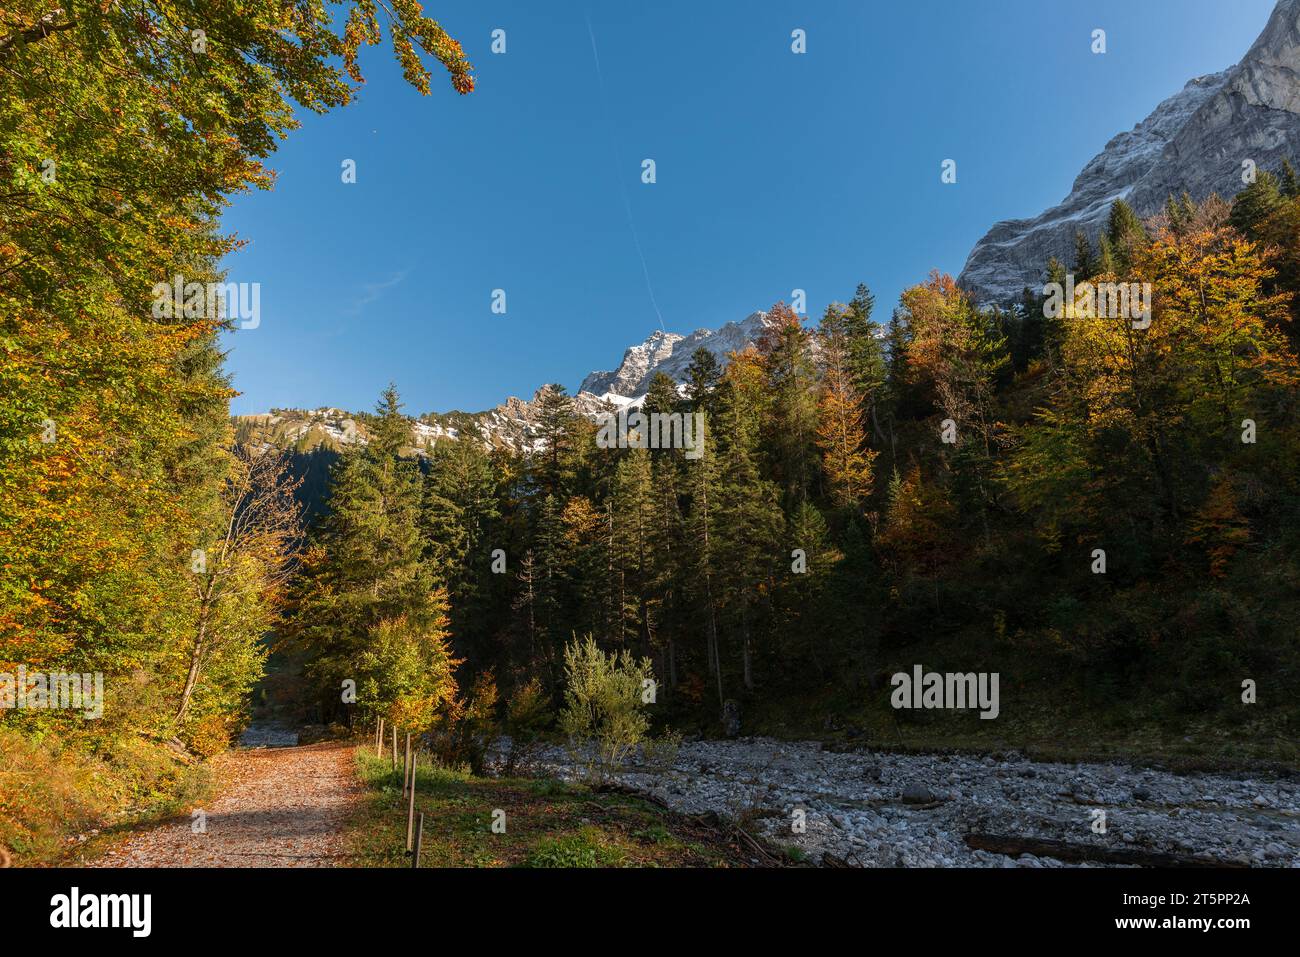 Vistas a lo largo y en el foilage de otoño, temporada de otoño en el estrecho Engtal o Eng Valley, Hinterriss, Tirol, Austria, Europa Foto de stock